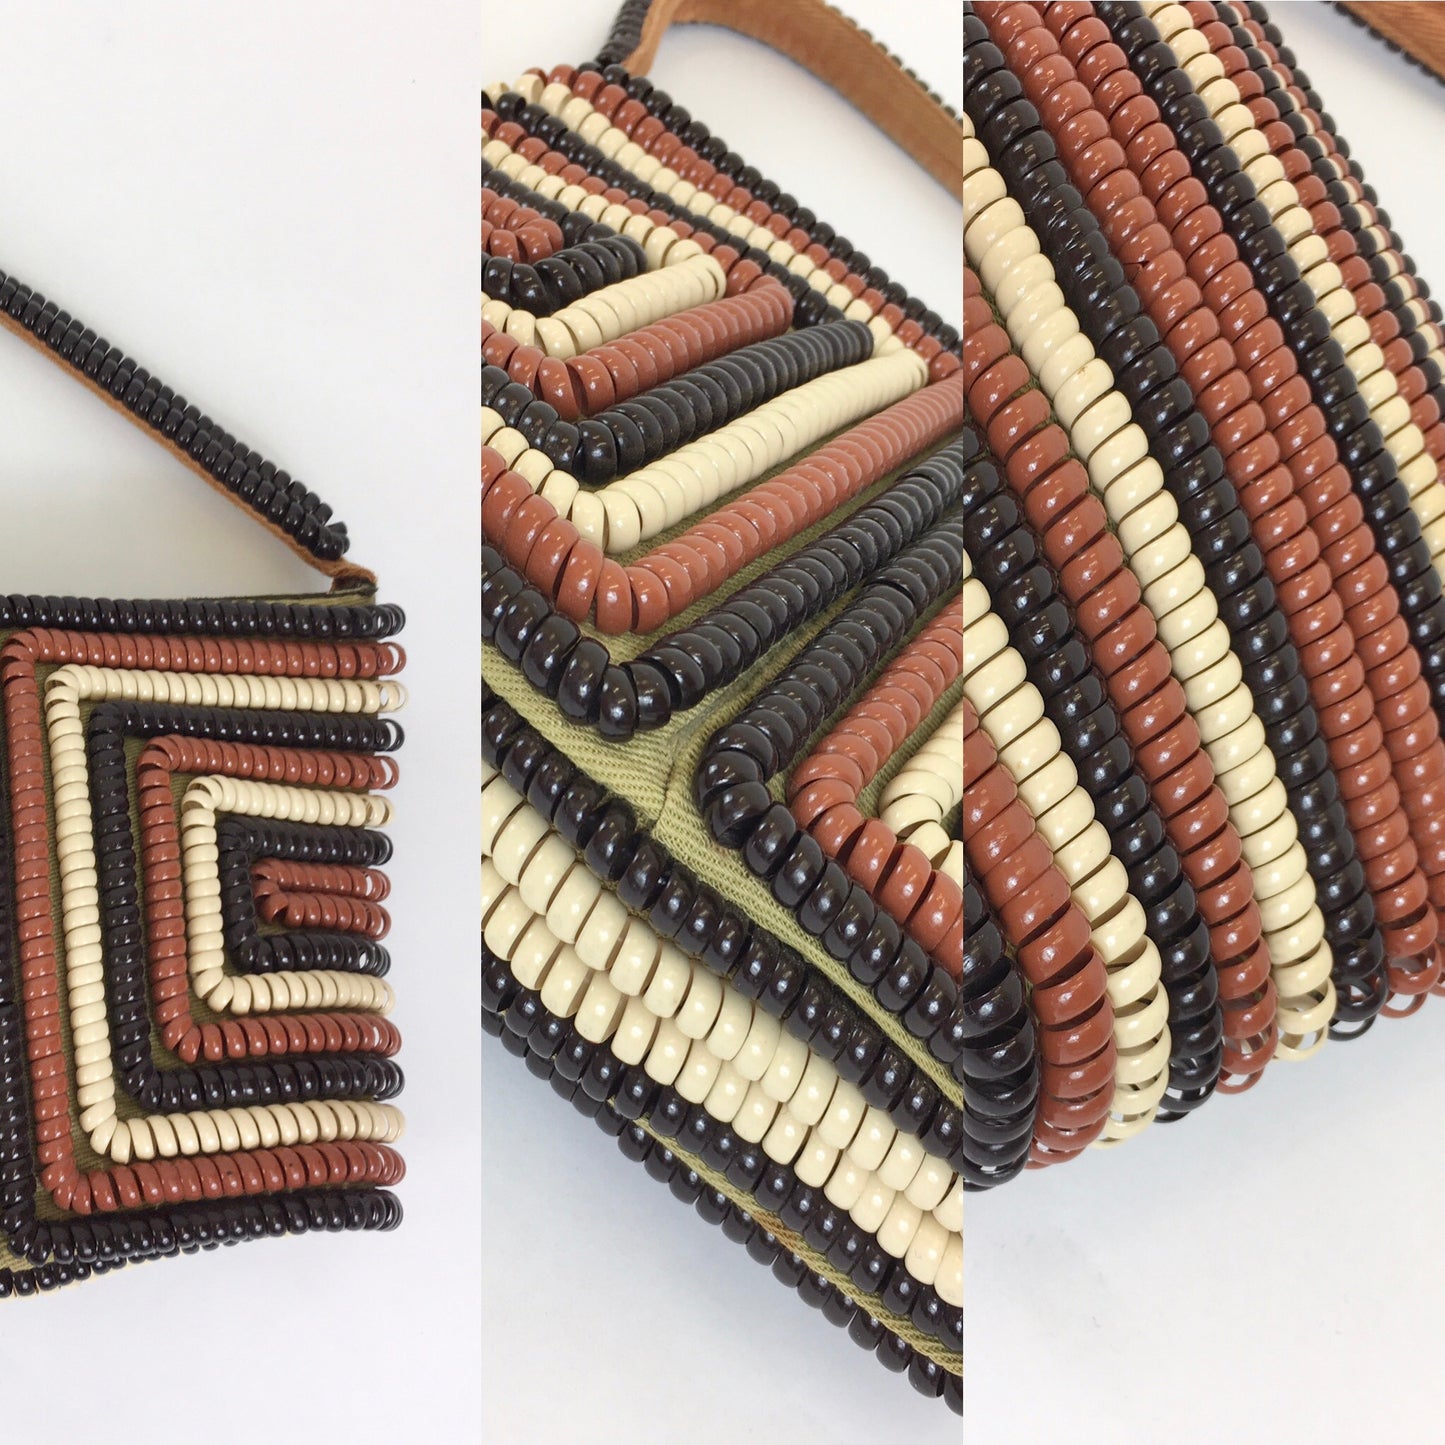 Original 1940's Telephone Cord Handbag - Tricolor In Brown, Taupe & Dark Brown